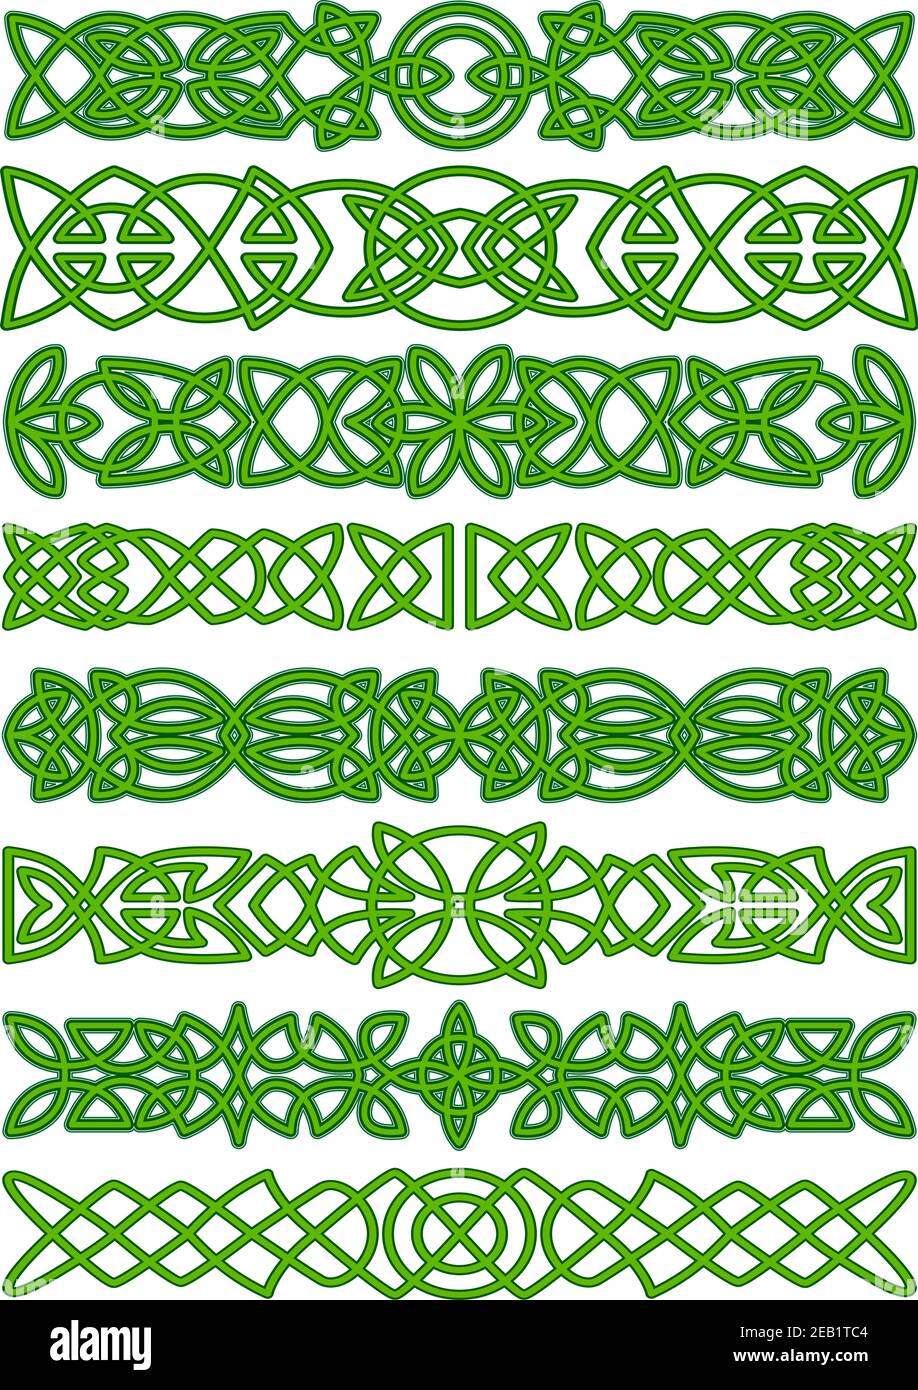 Keltische Bordüren mit floralen traditionellen grünen Tracery Ornament für Tattoo Oder ethnische Einrichtung Stock Vektor